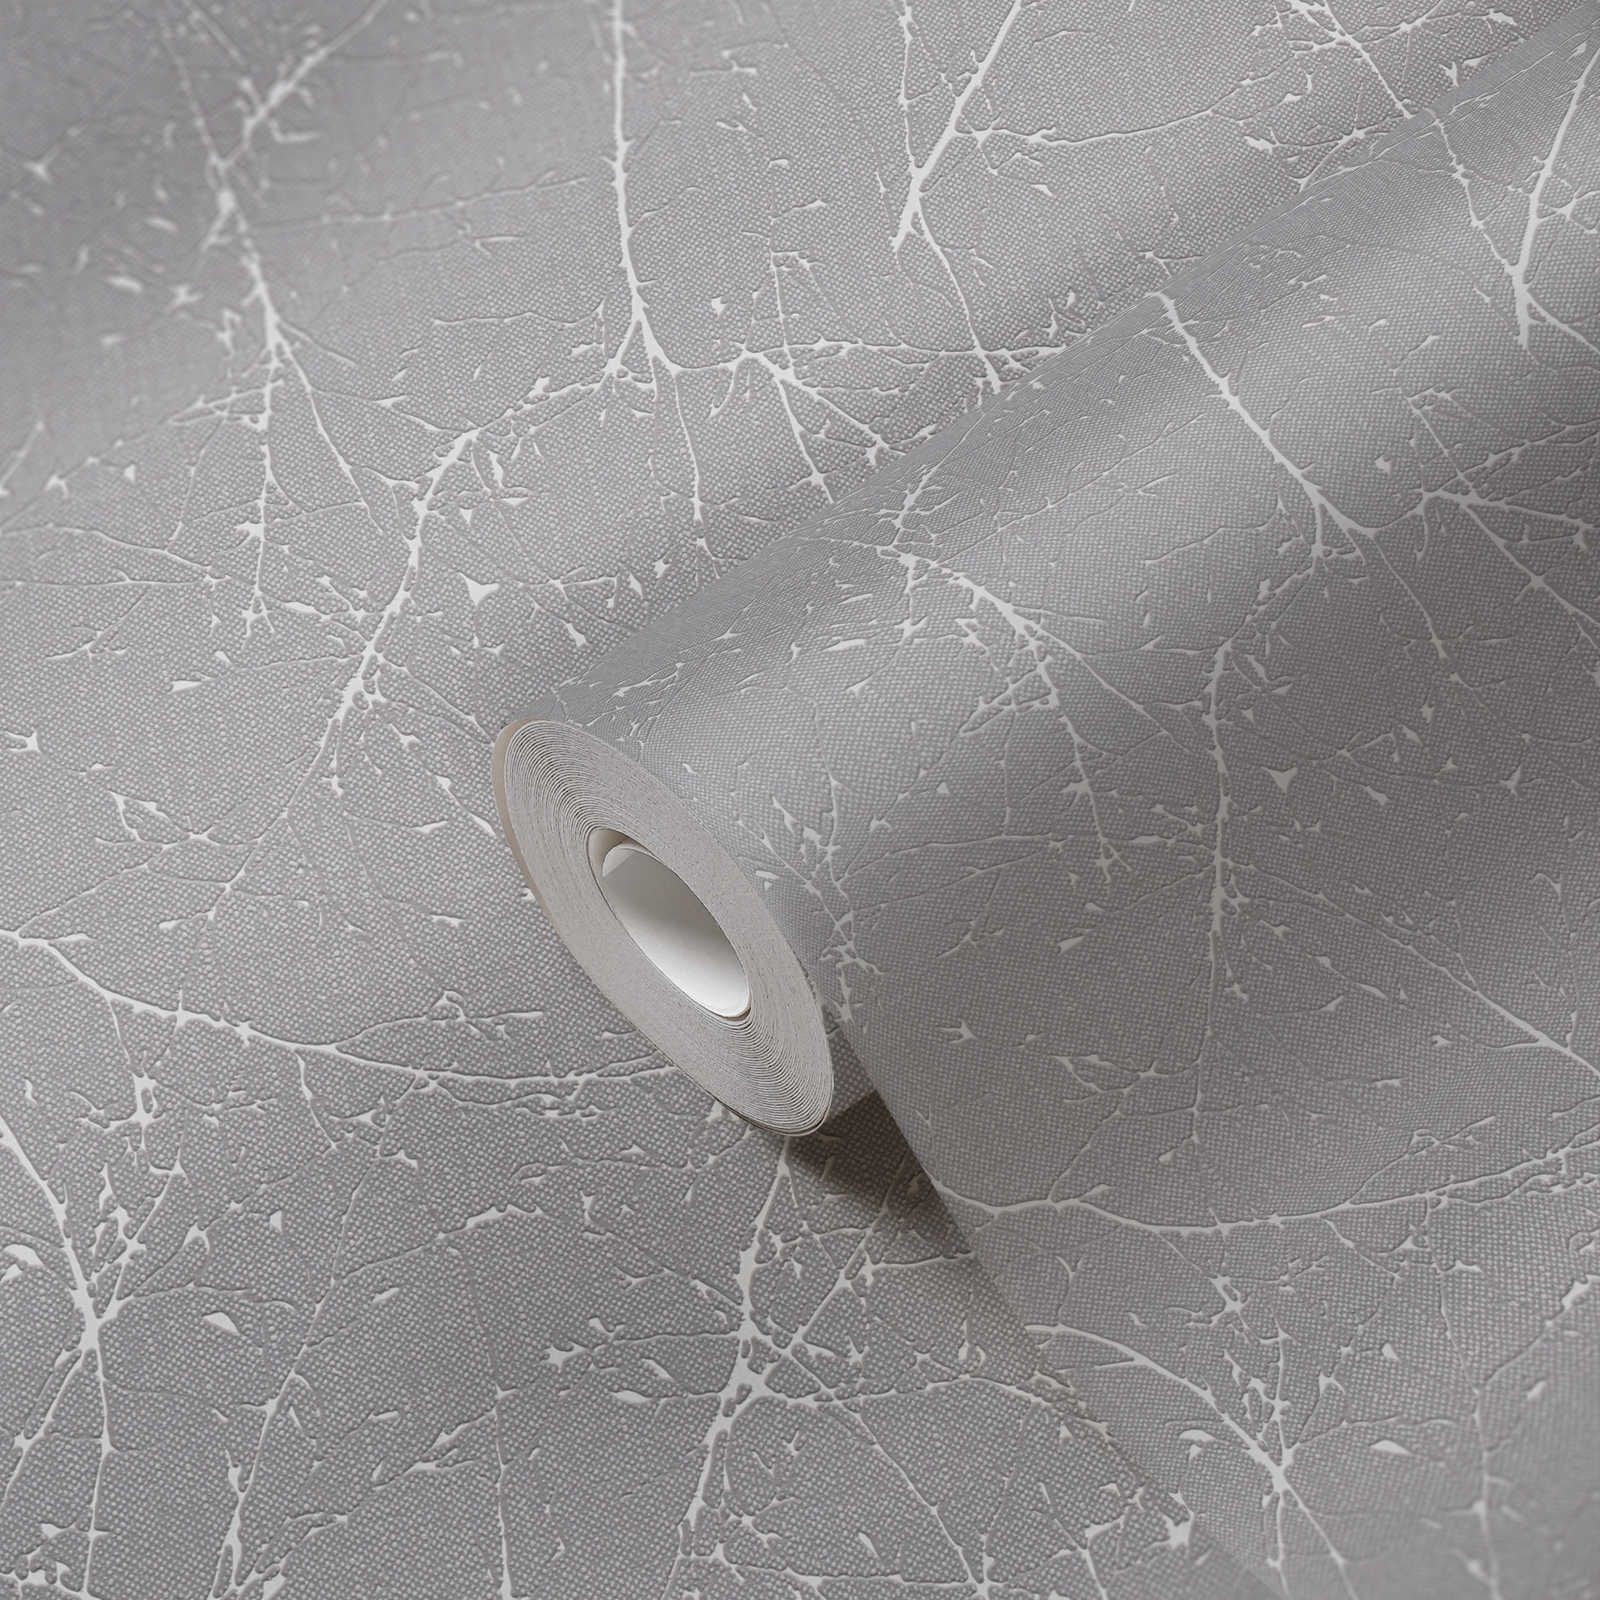             Papel pintado no tejido con motivos florales - gris, blanco
        